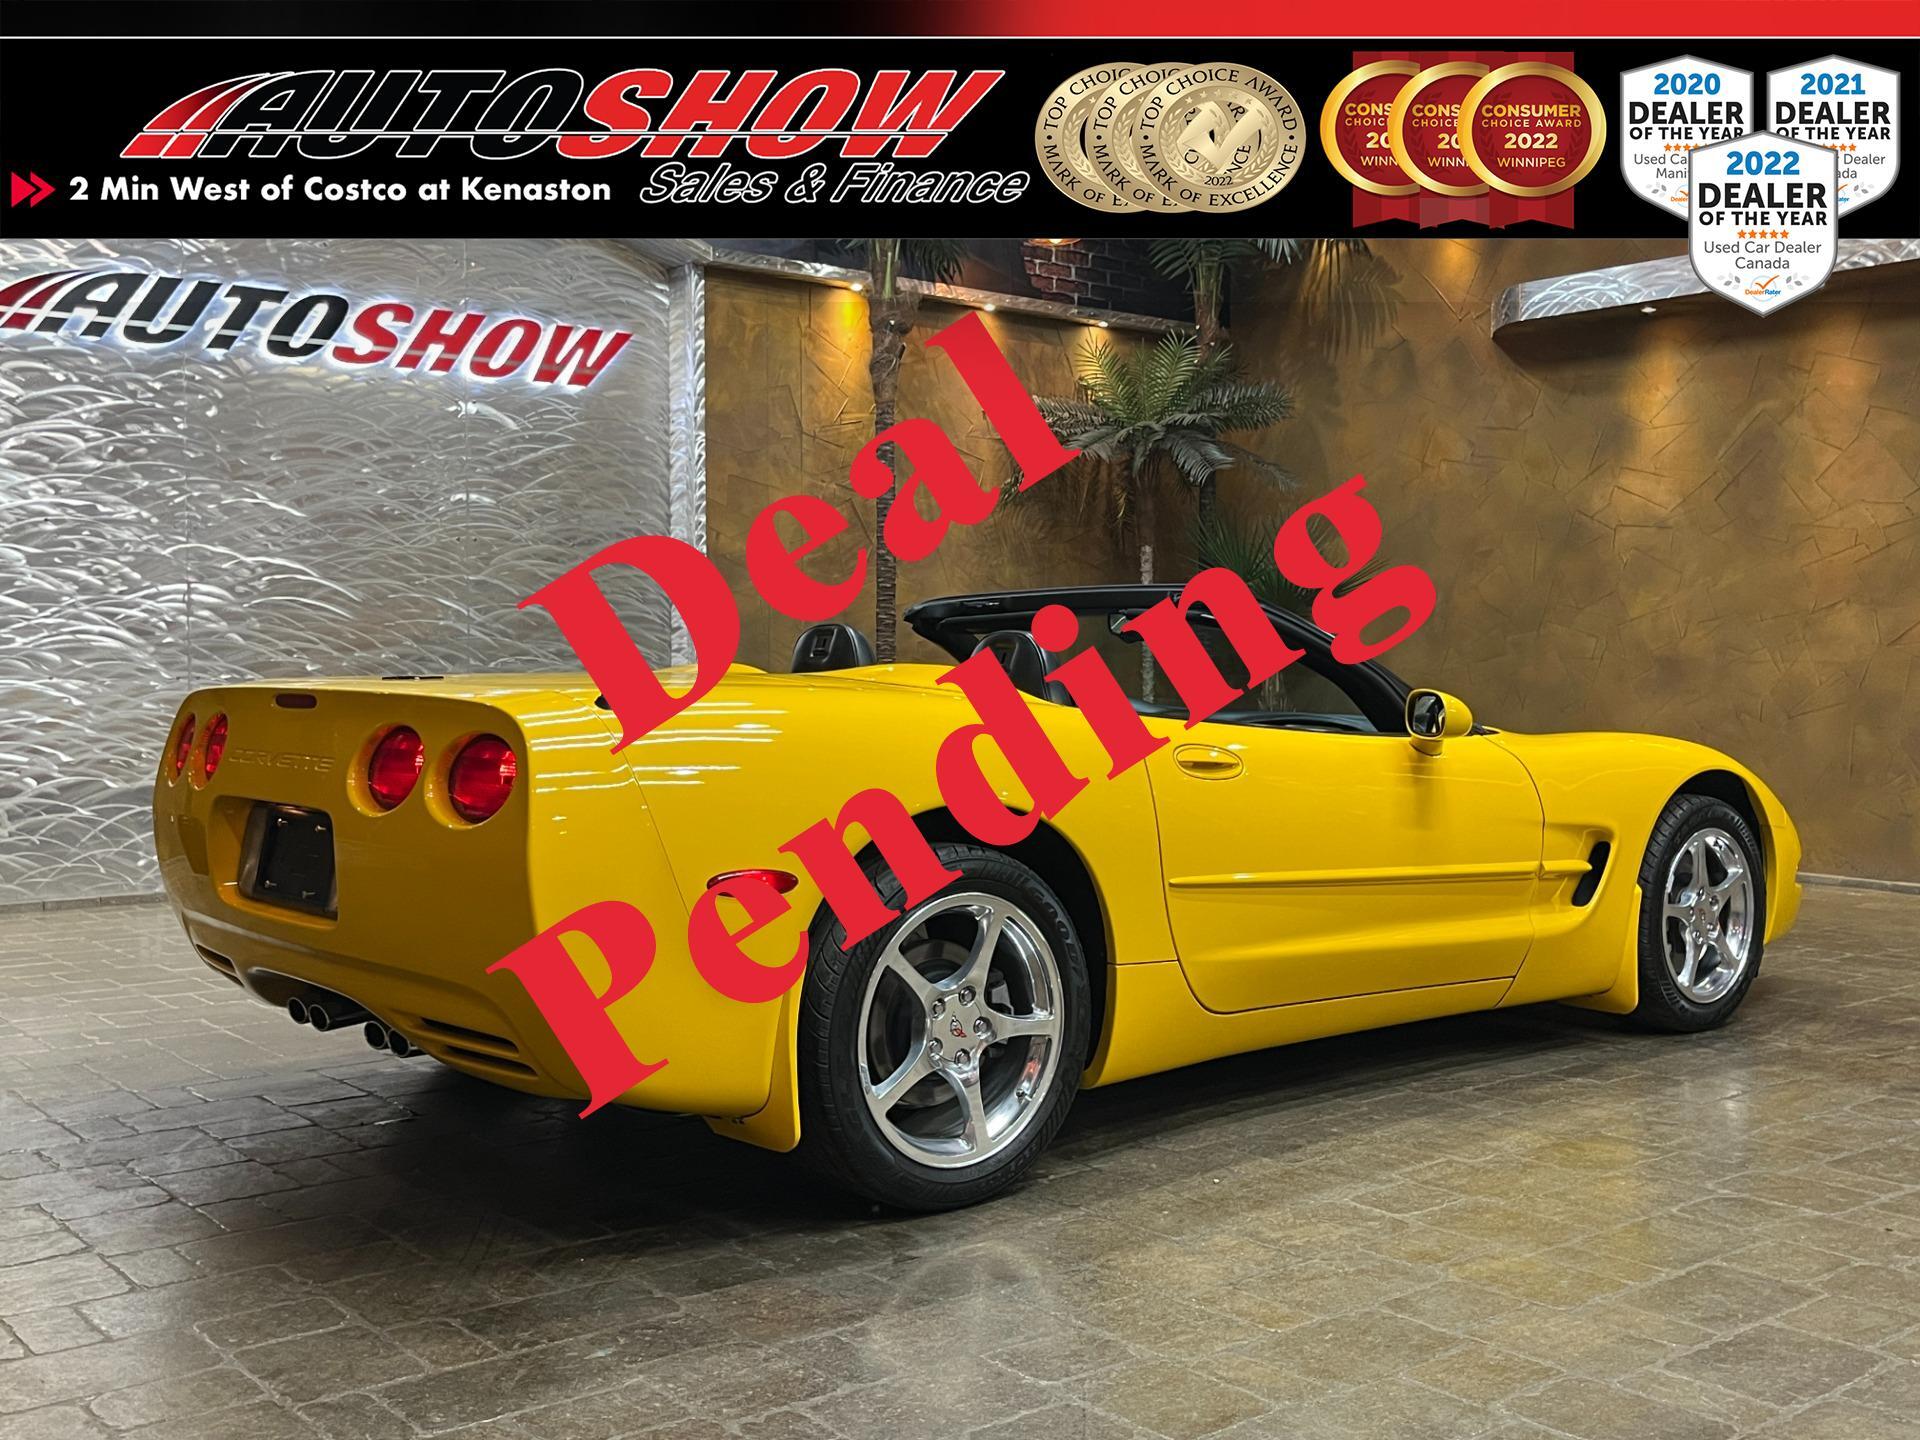 2001 Chevrolet Corvette Convertible - Pristine, Local, Showroom Condition!